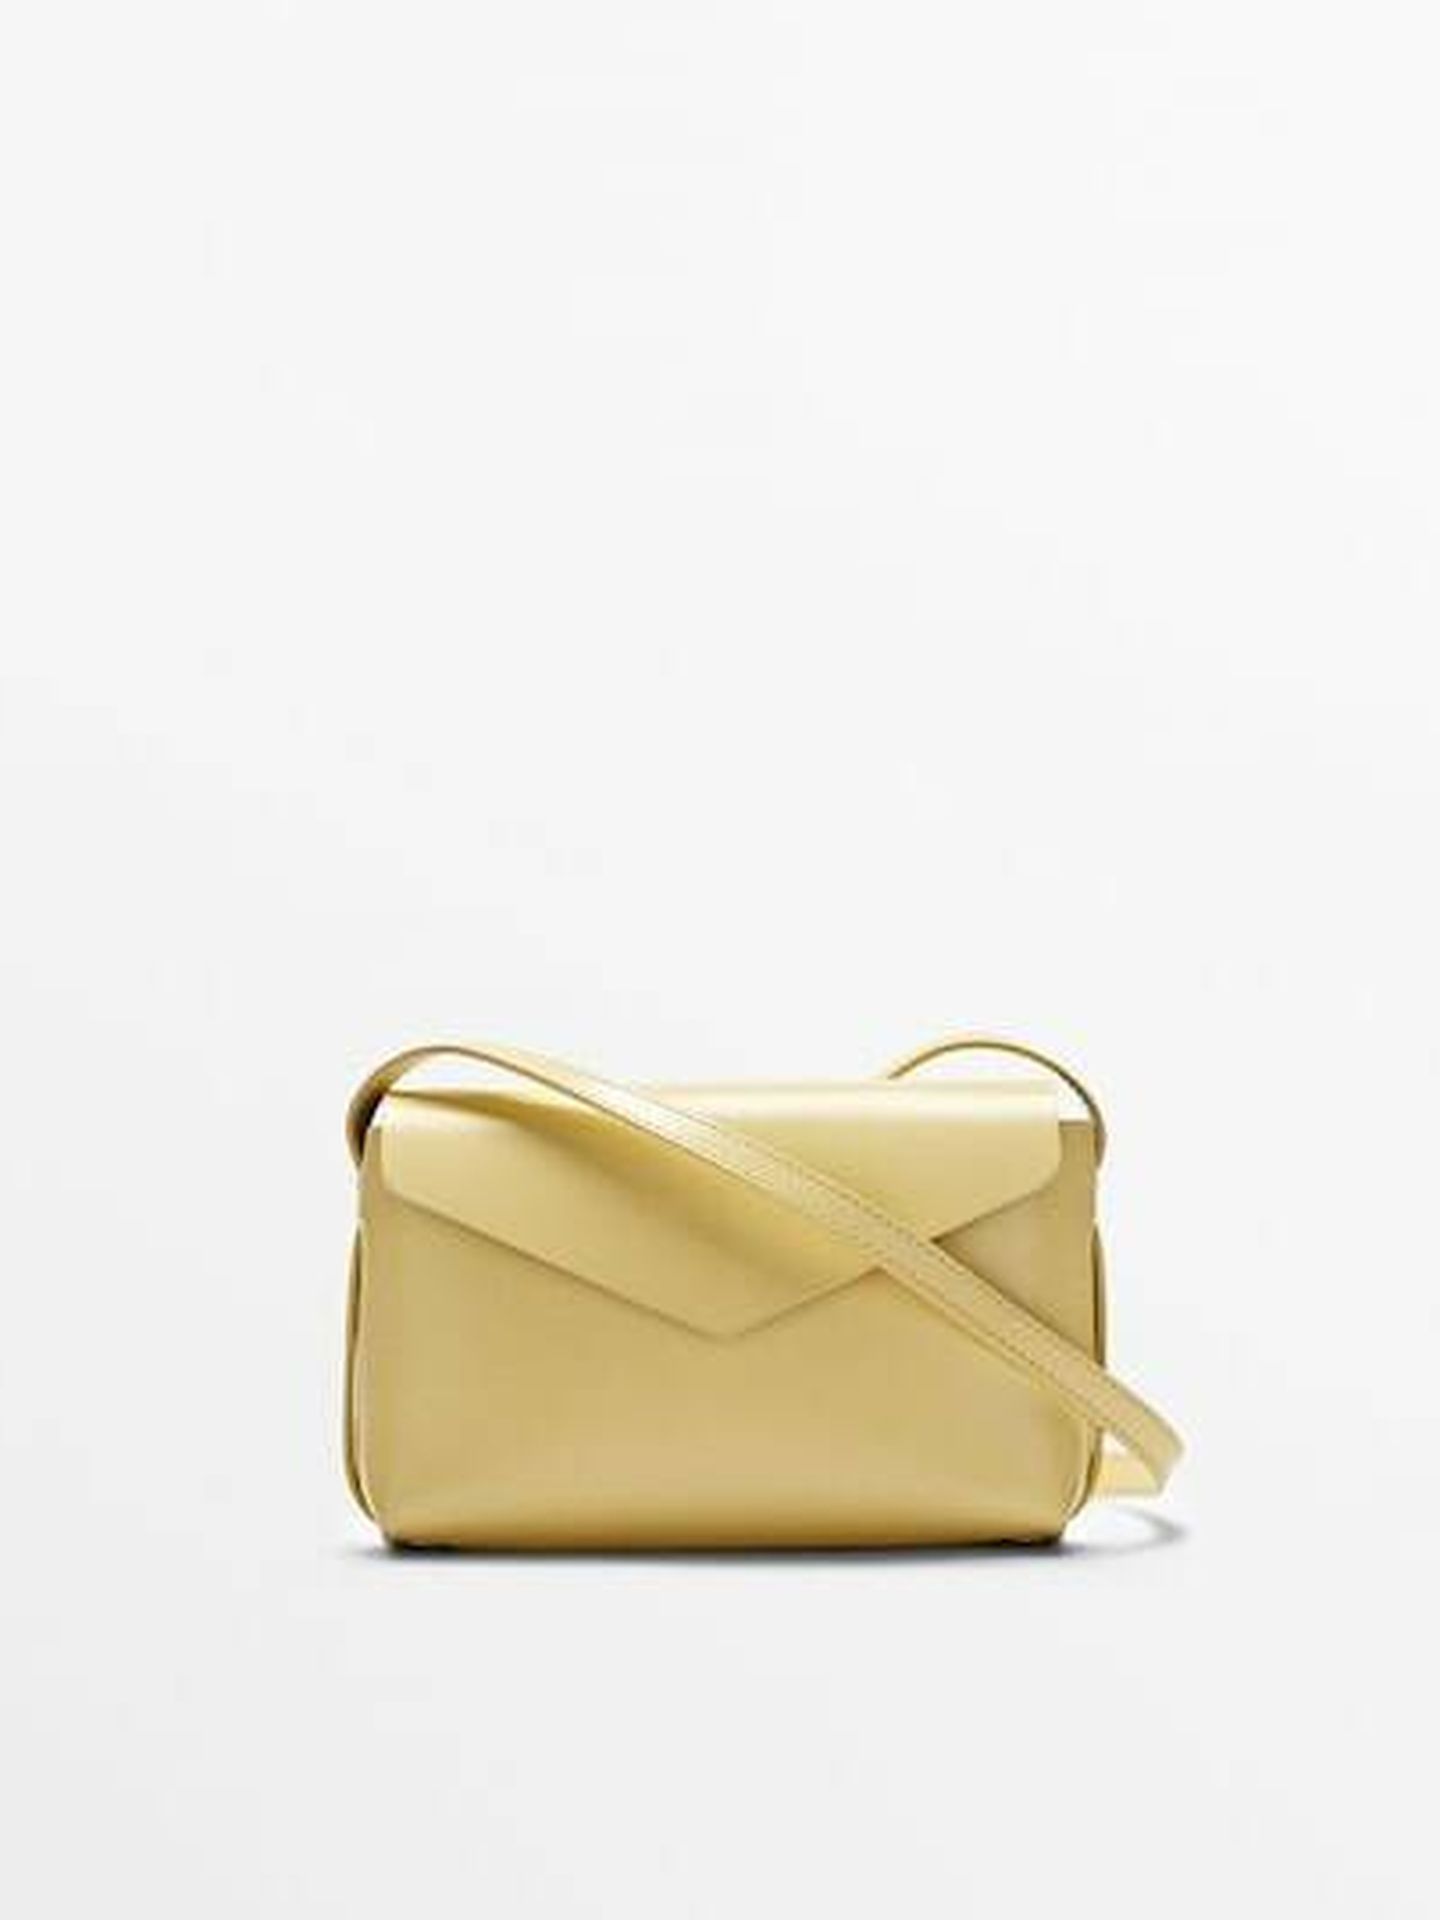 El nuevo bolso sobre en piel de Massimo Dutti en tres colores. (Cortesía)